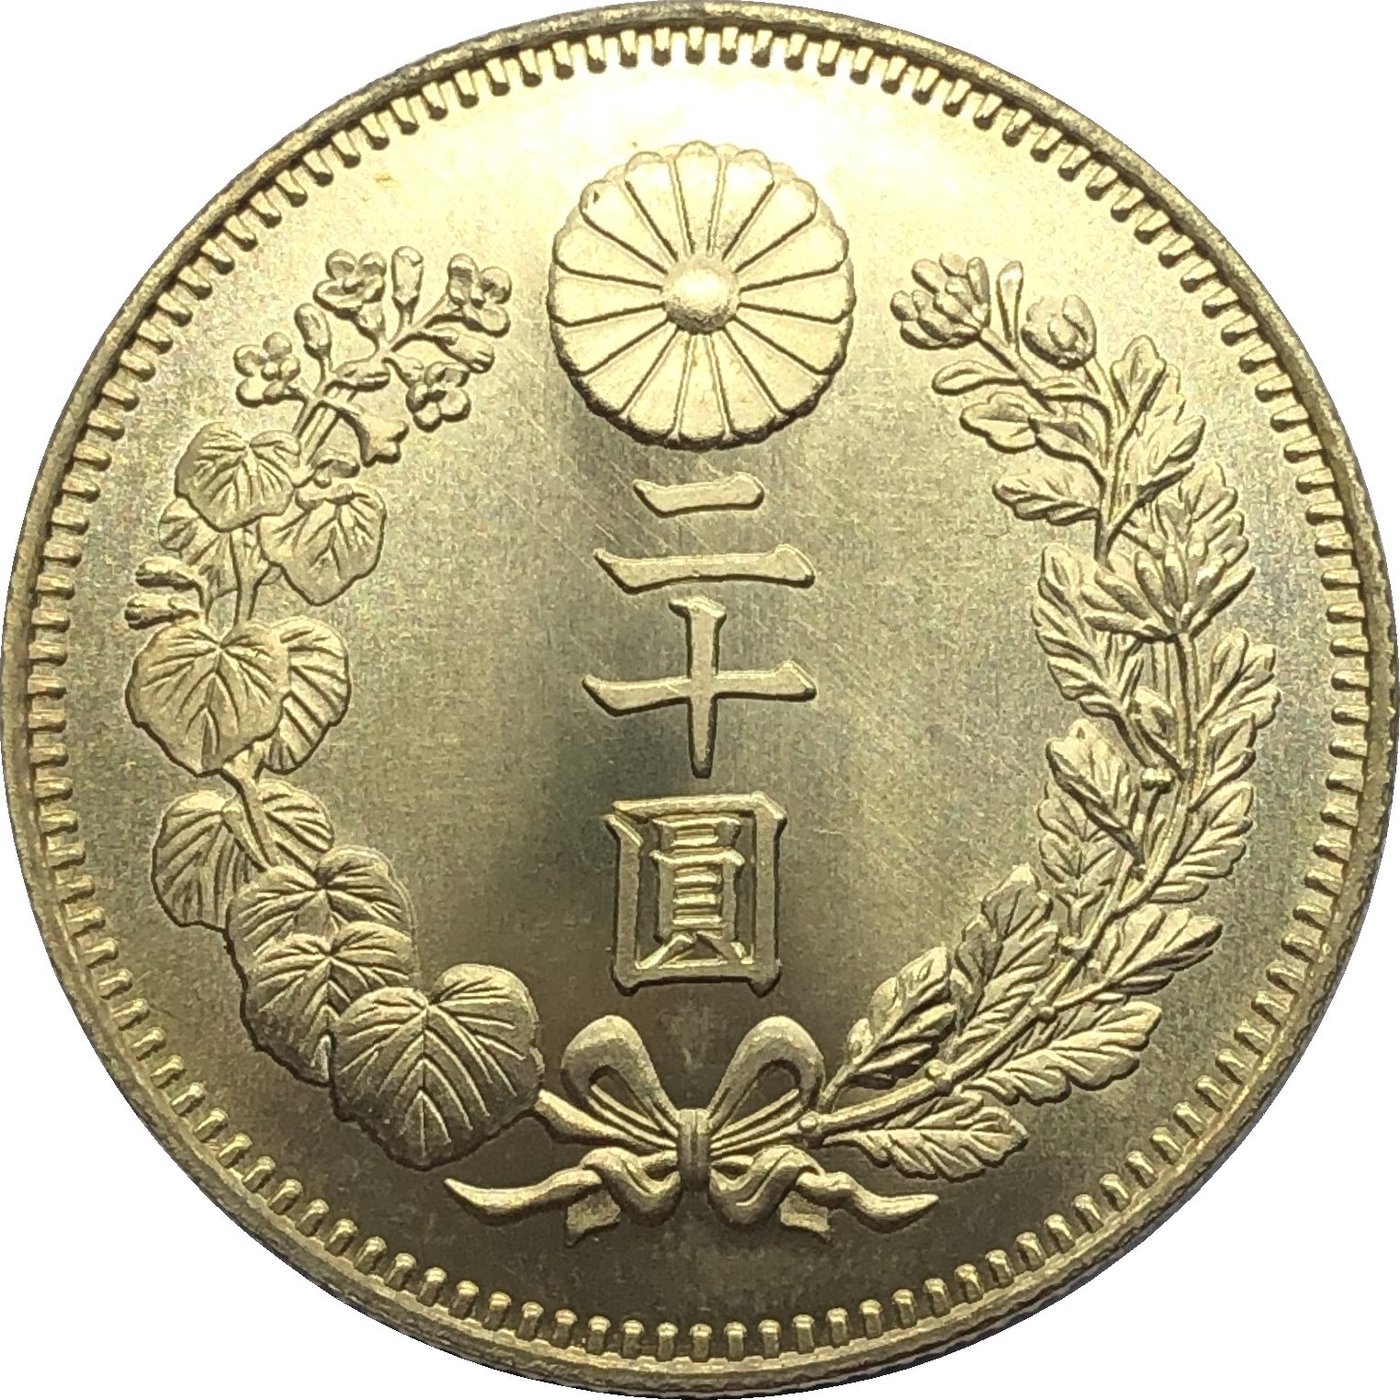 外國幣大日本明治三十六年二十圓黃銅原光金幣錢幣A3595 | Yahoo